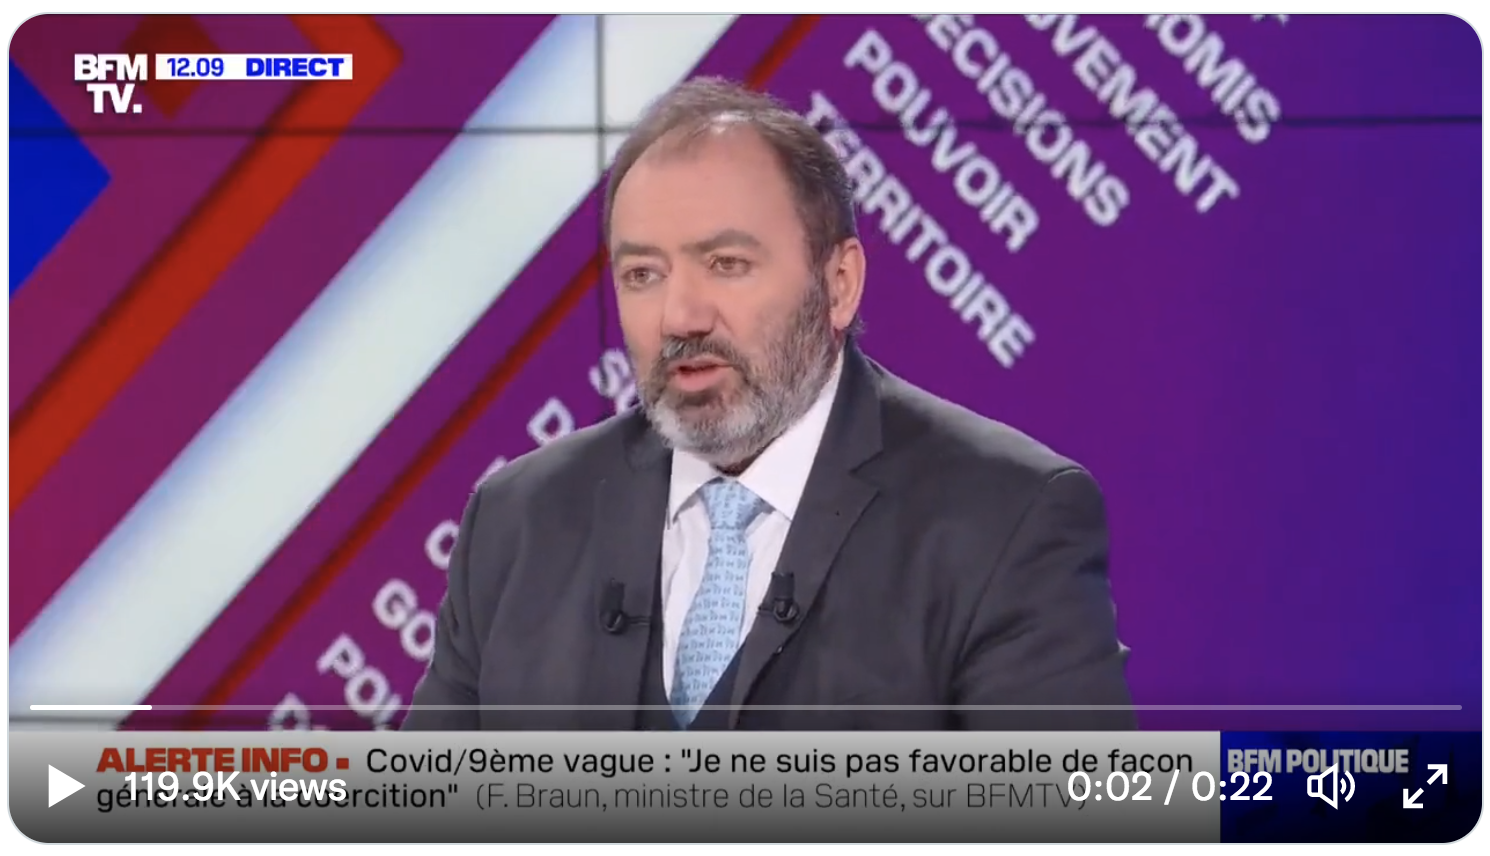 Le ministre de la Santé François Braun menace tranquillement les Français (VIDÉO)